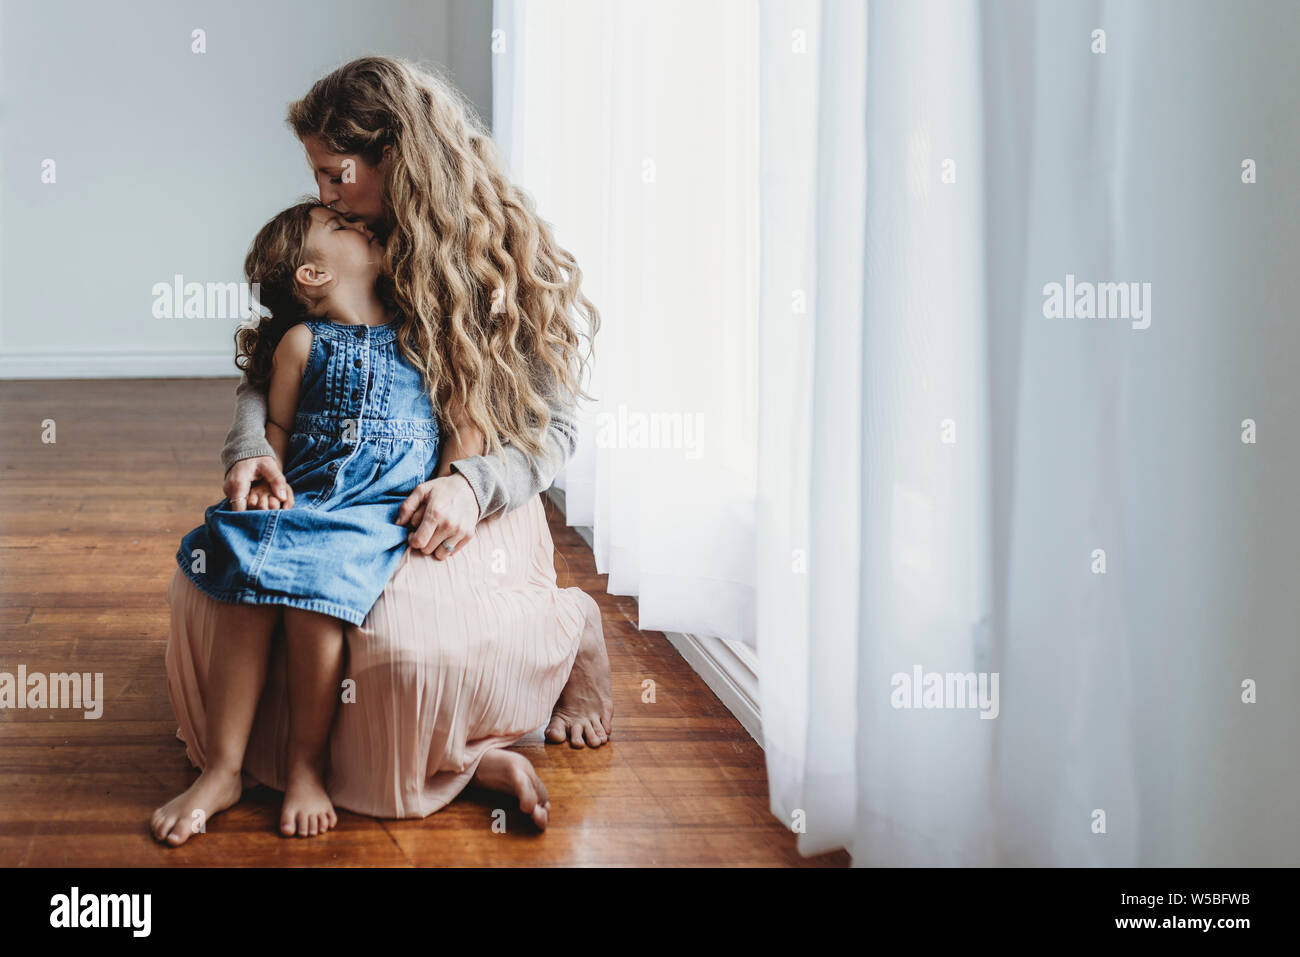 La Vue De Mère Embrassant Sa Fille Sur Le Front Tout En Se Tenant La Main Photo Stock Alamy